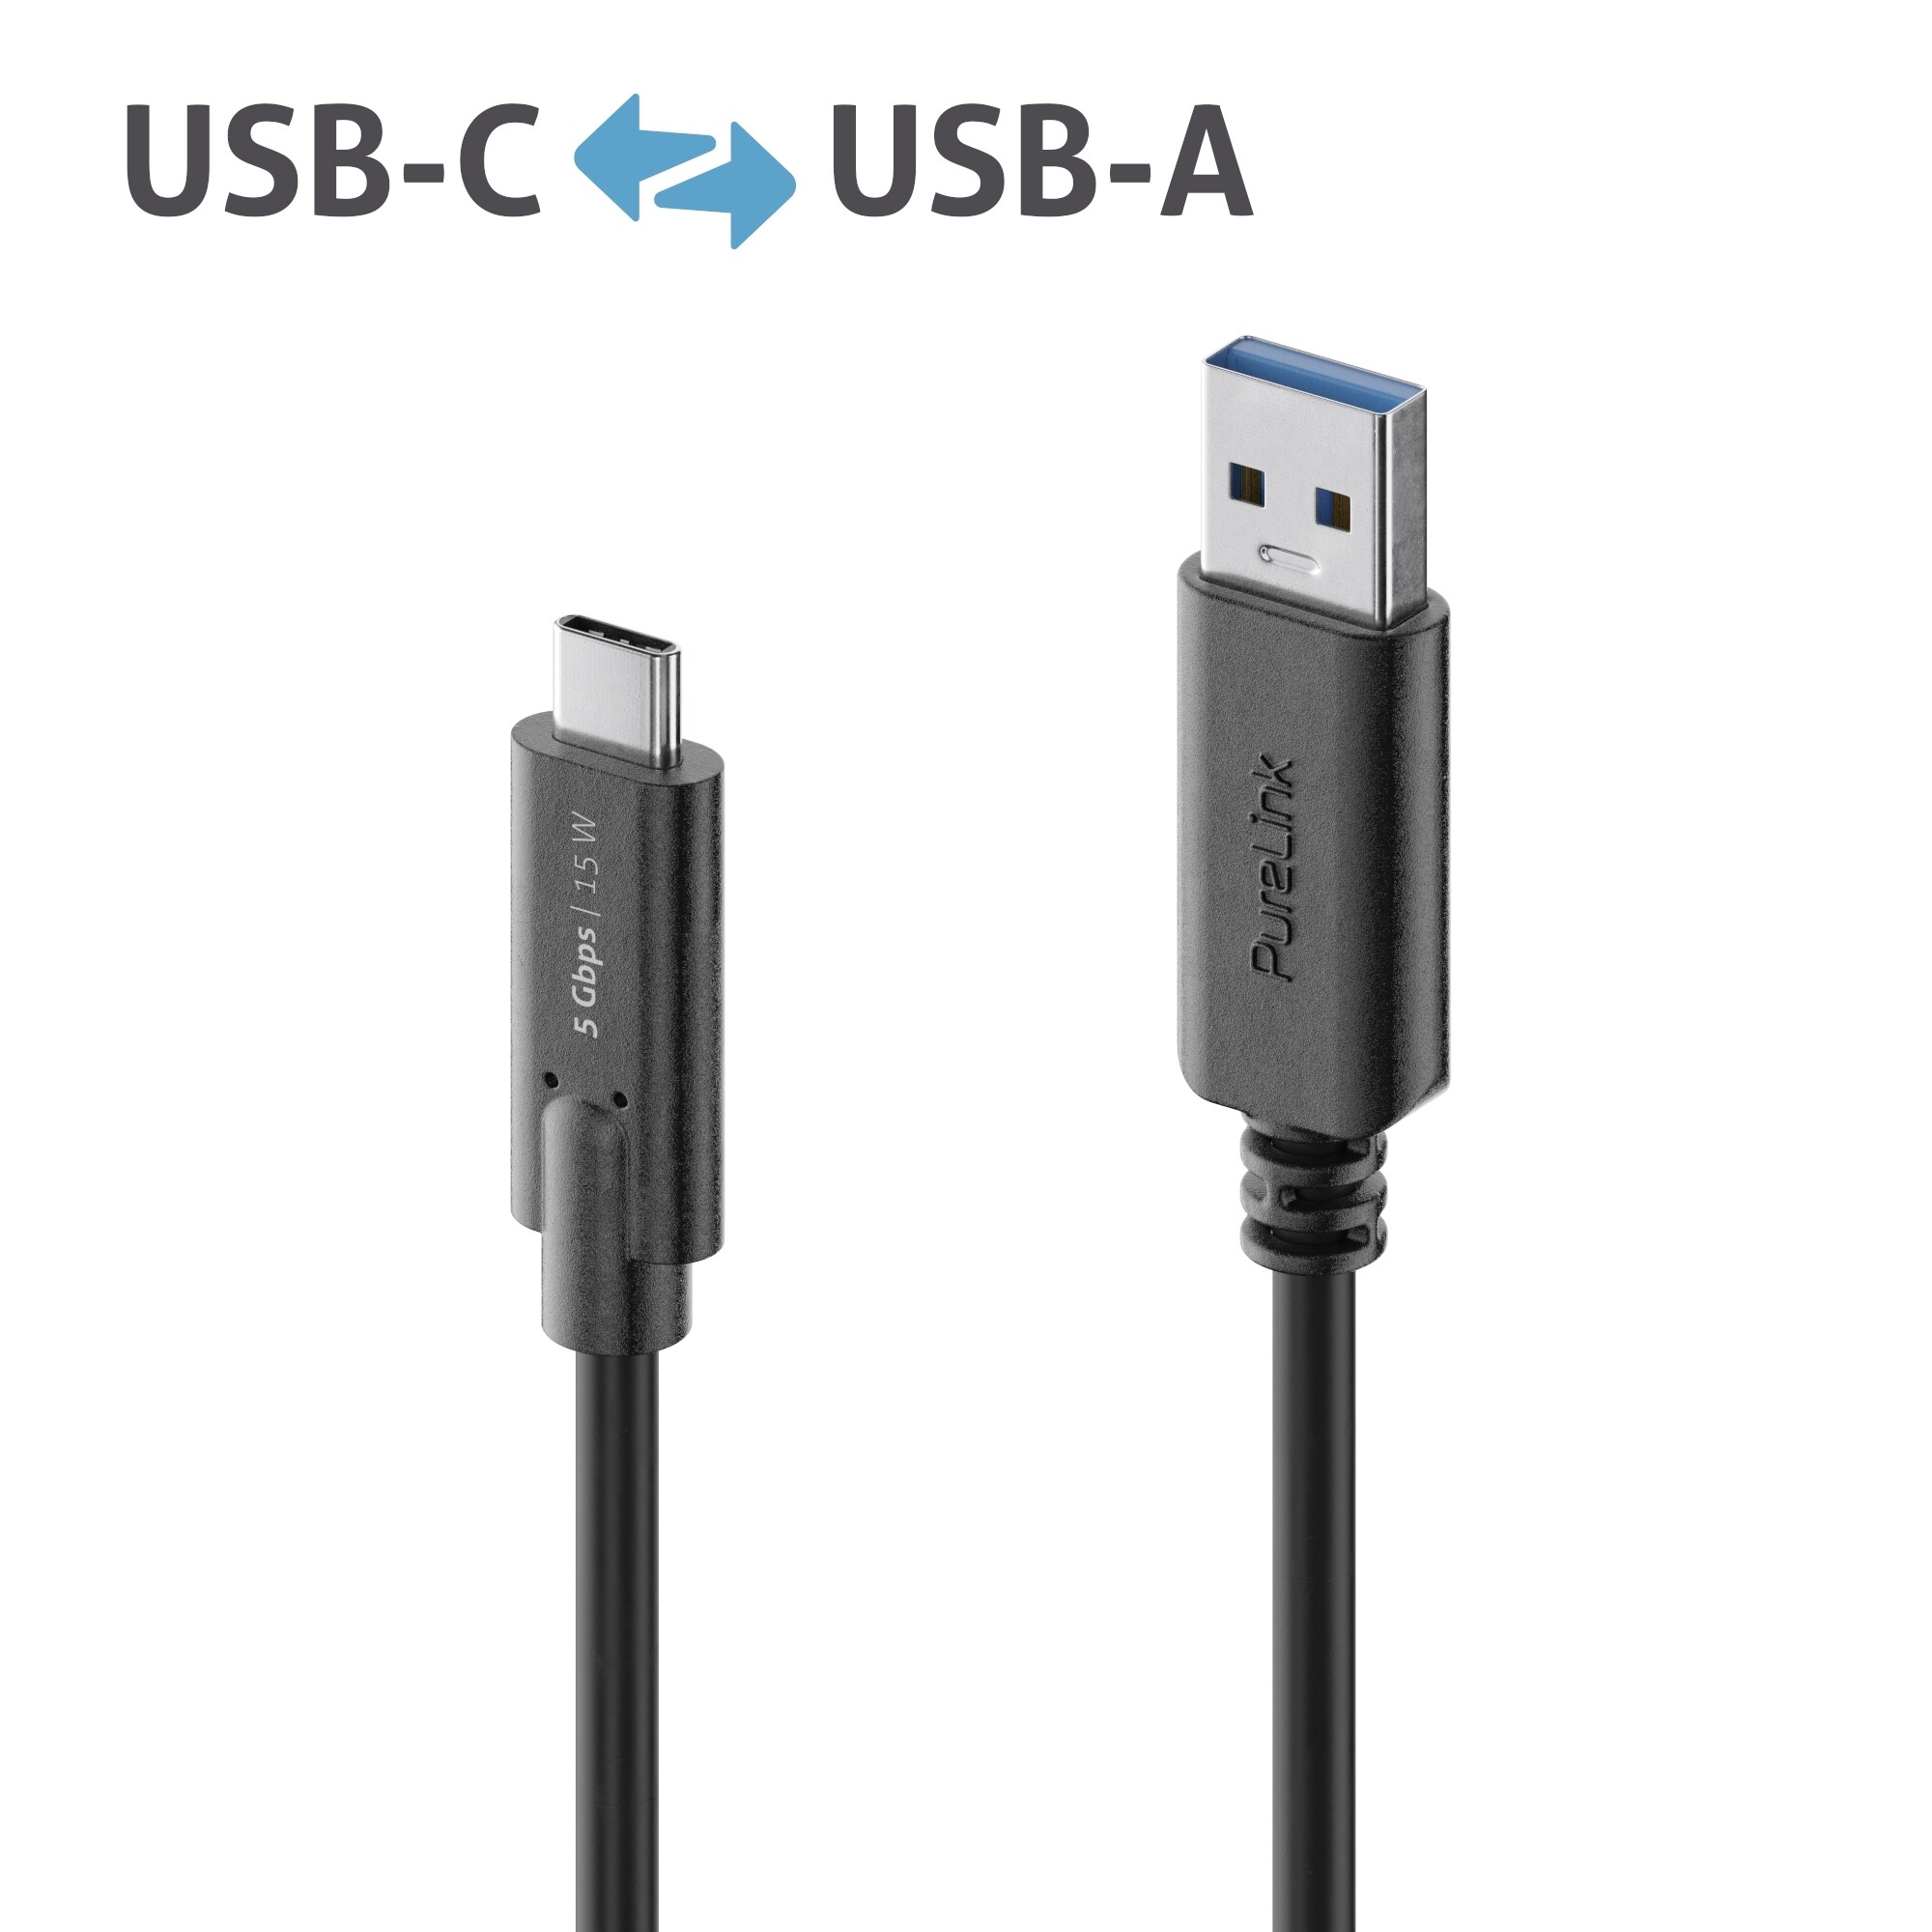 Purelink-IS2601-015-USB-C-auf-USB-A-Kabel-1-5m-schwarz